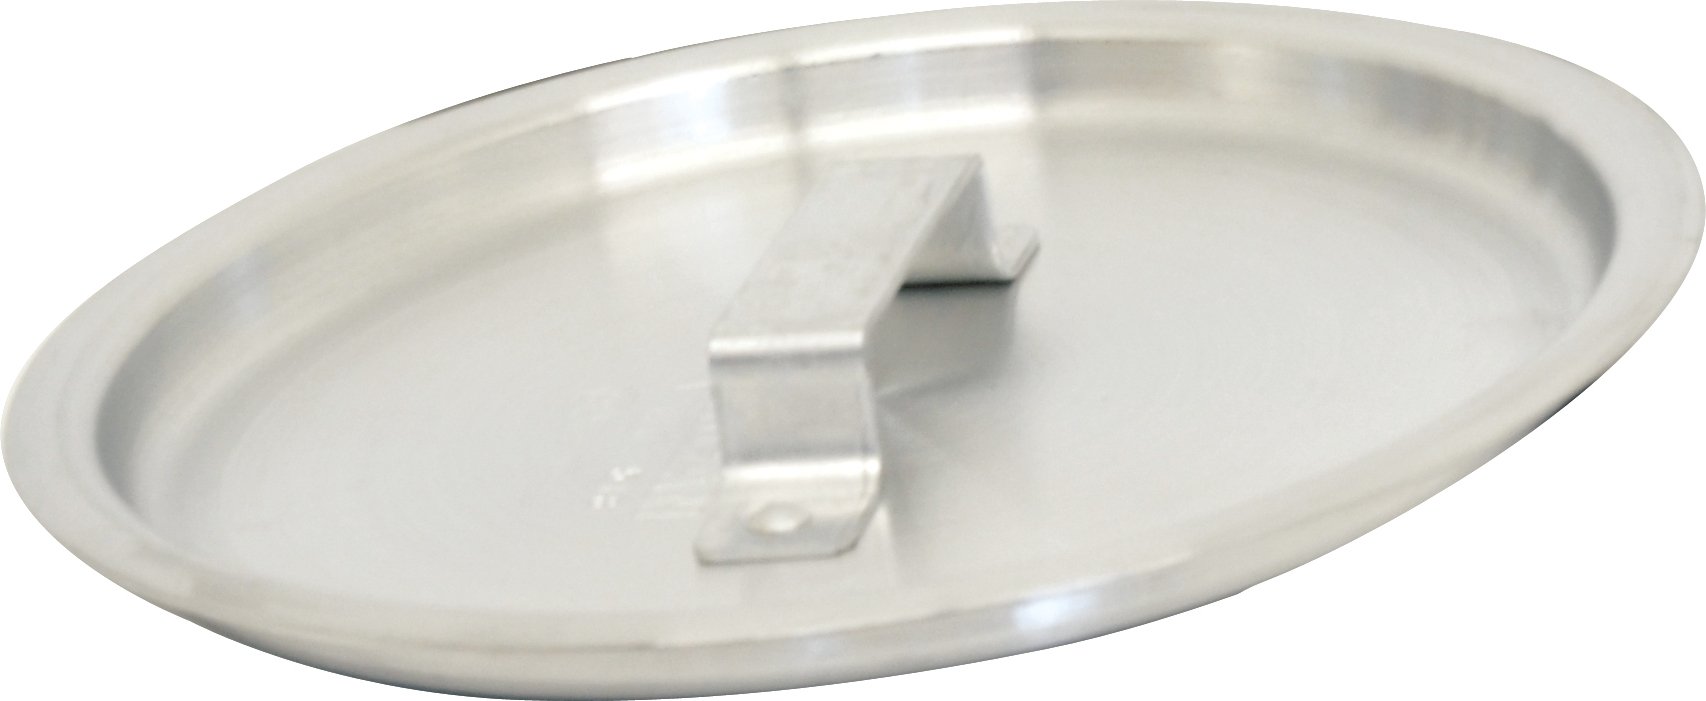 Omcan - Aluminum Cover For 14 QT Sauce Pot (80509), 20/cs - 80508